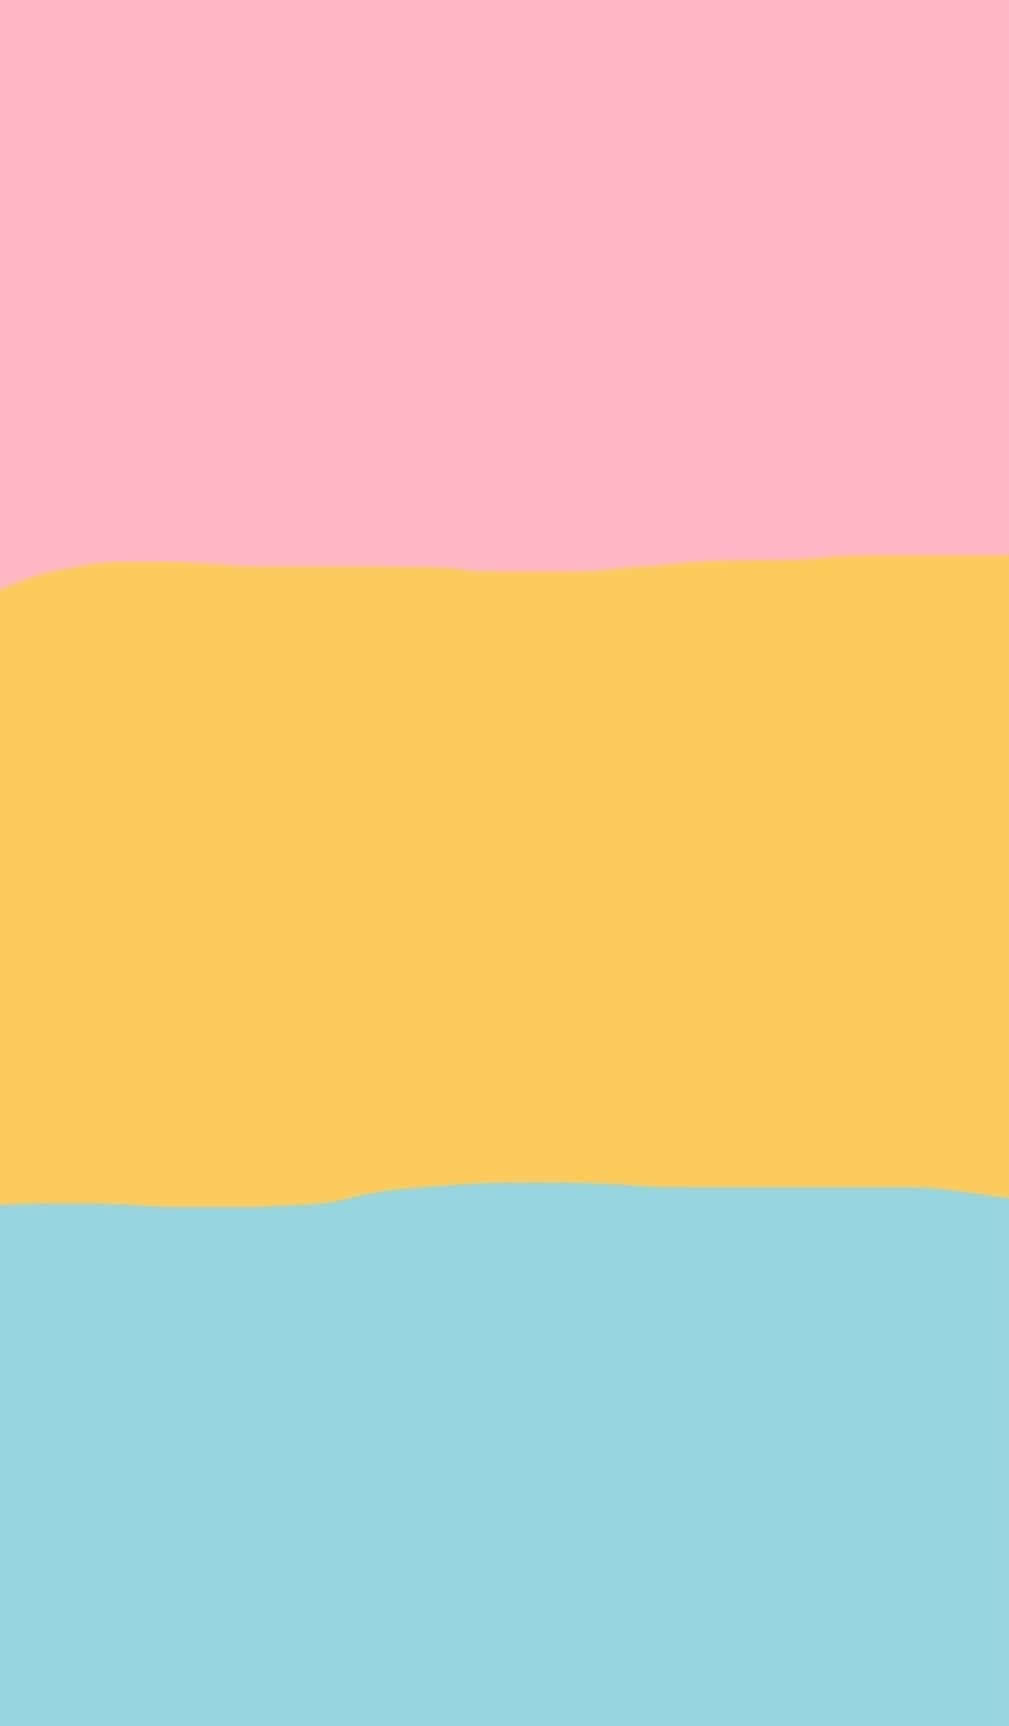 Umabandeira Rosa, Amarela E Azul Com Um Arco-íris No Meio Papel de Parede